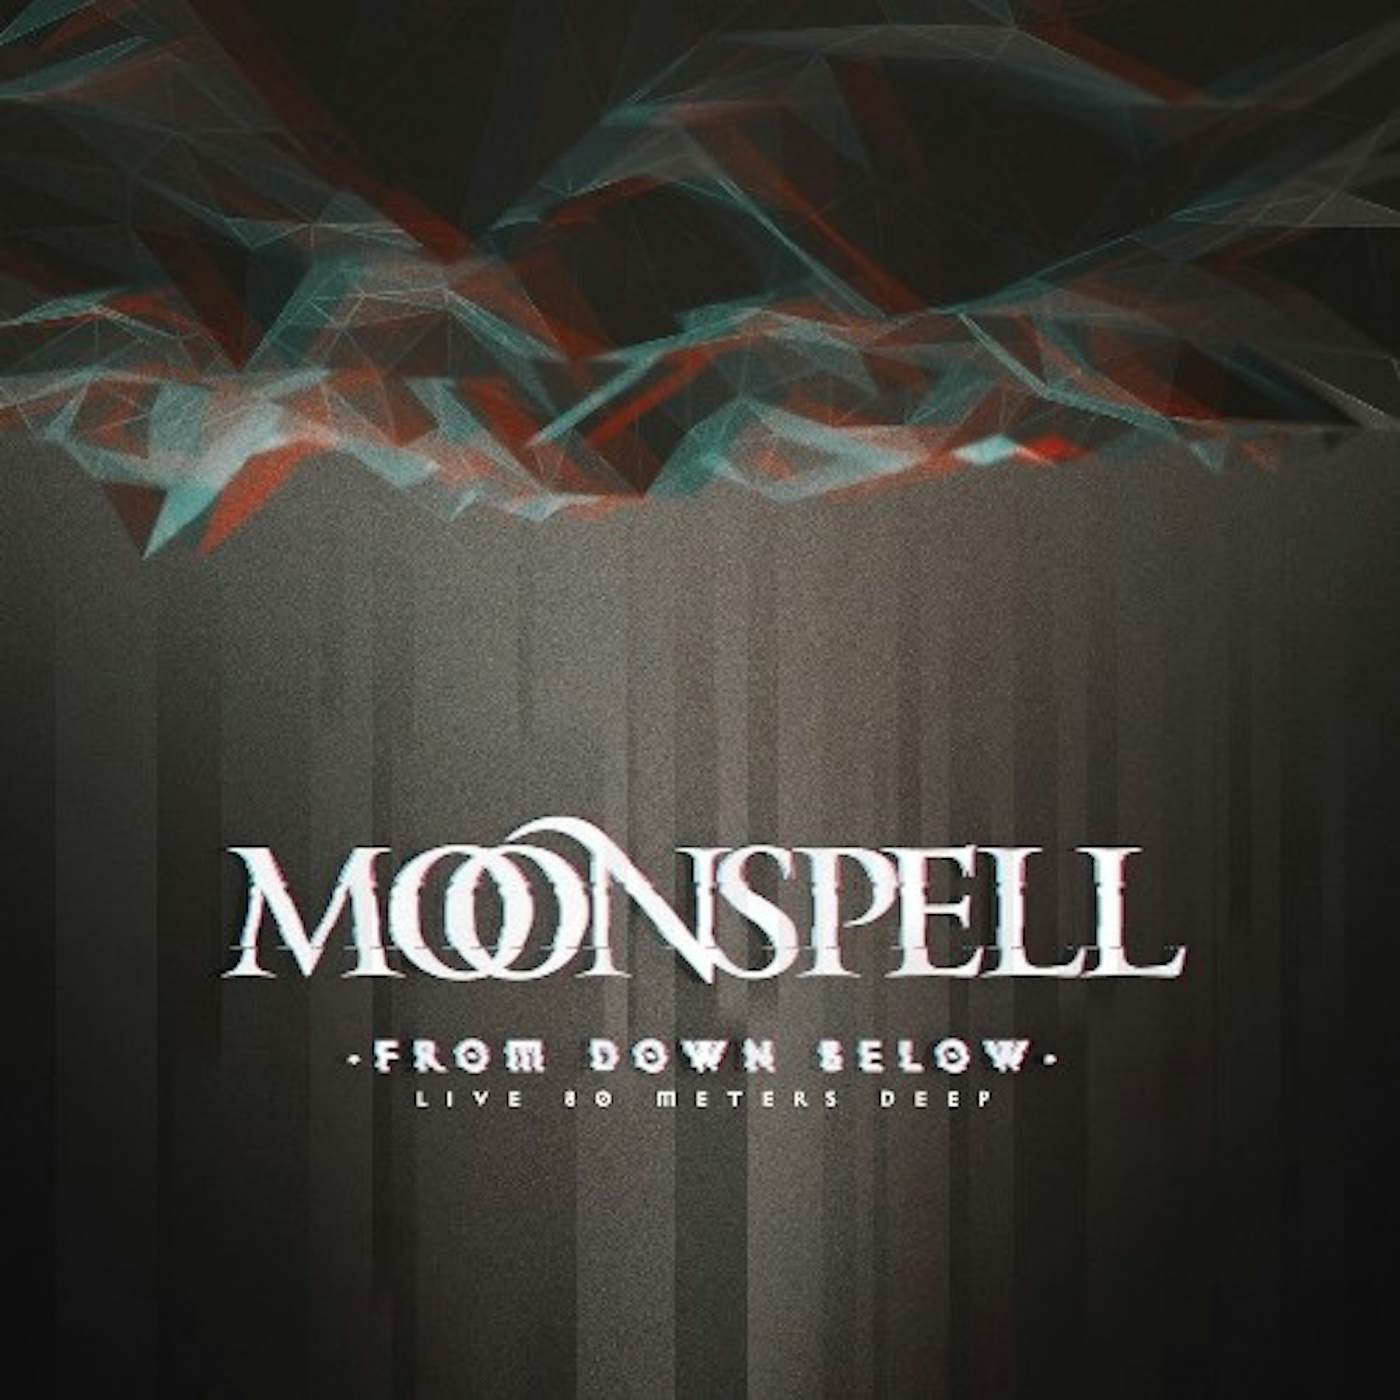 Moonspell From Down Below - Live 80 Meters Deep vinyl record